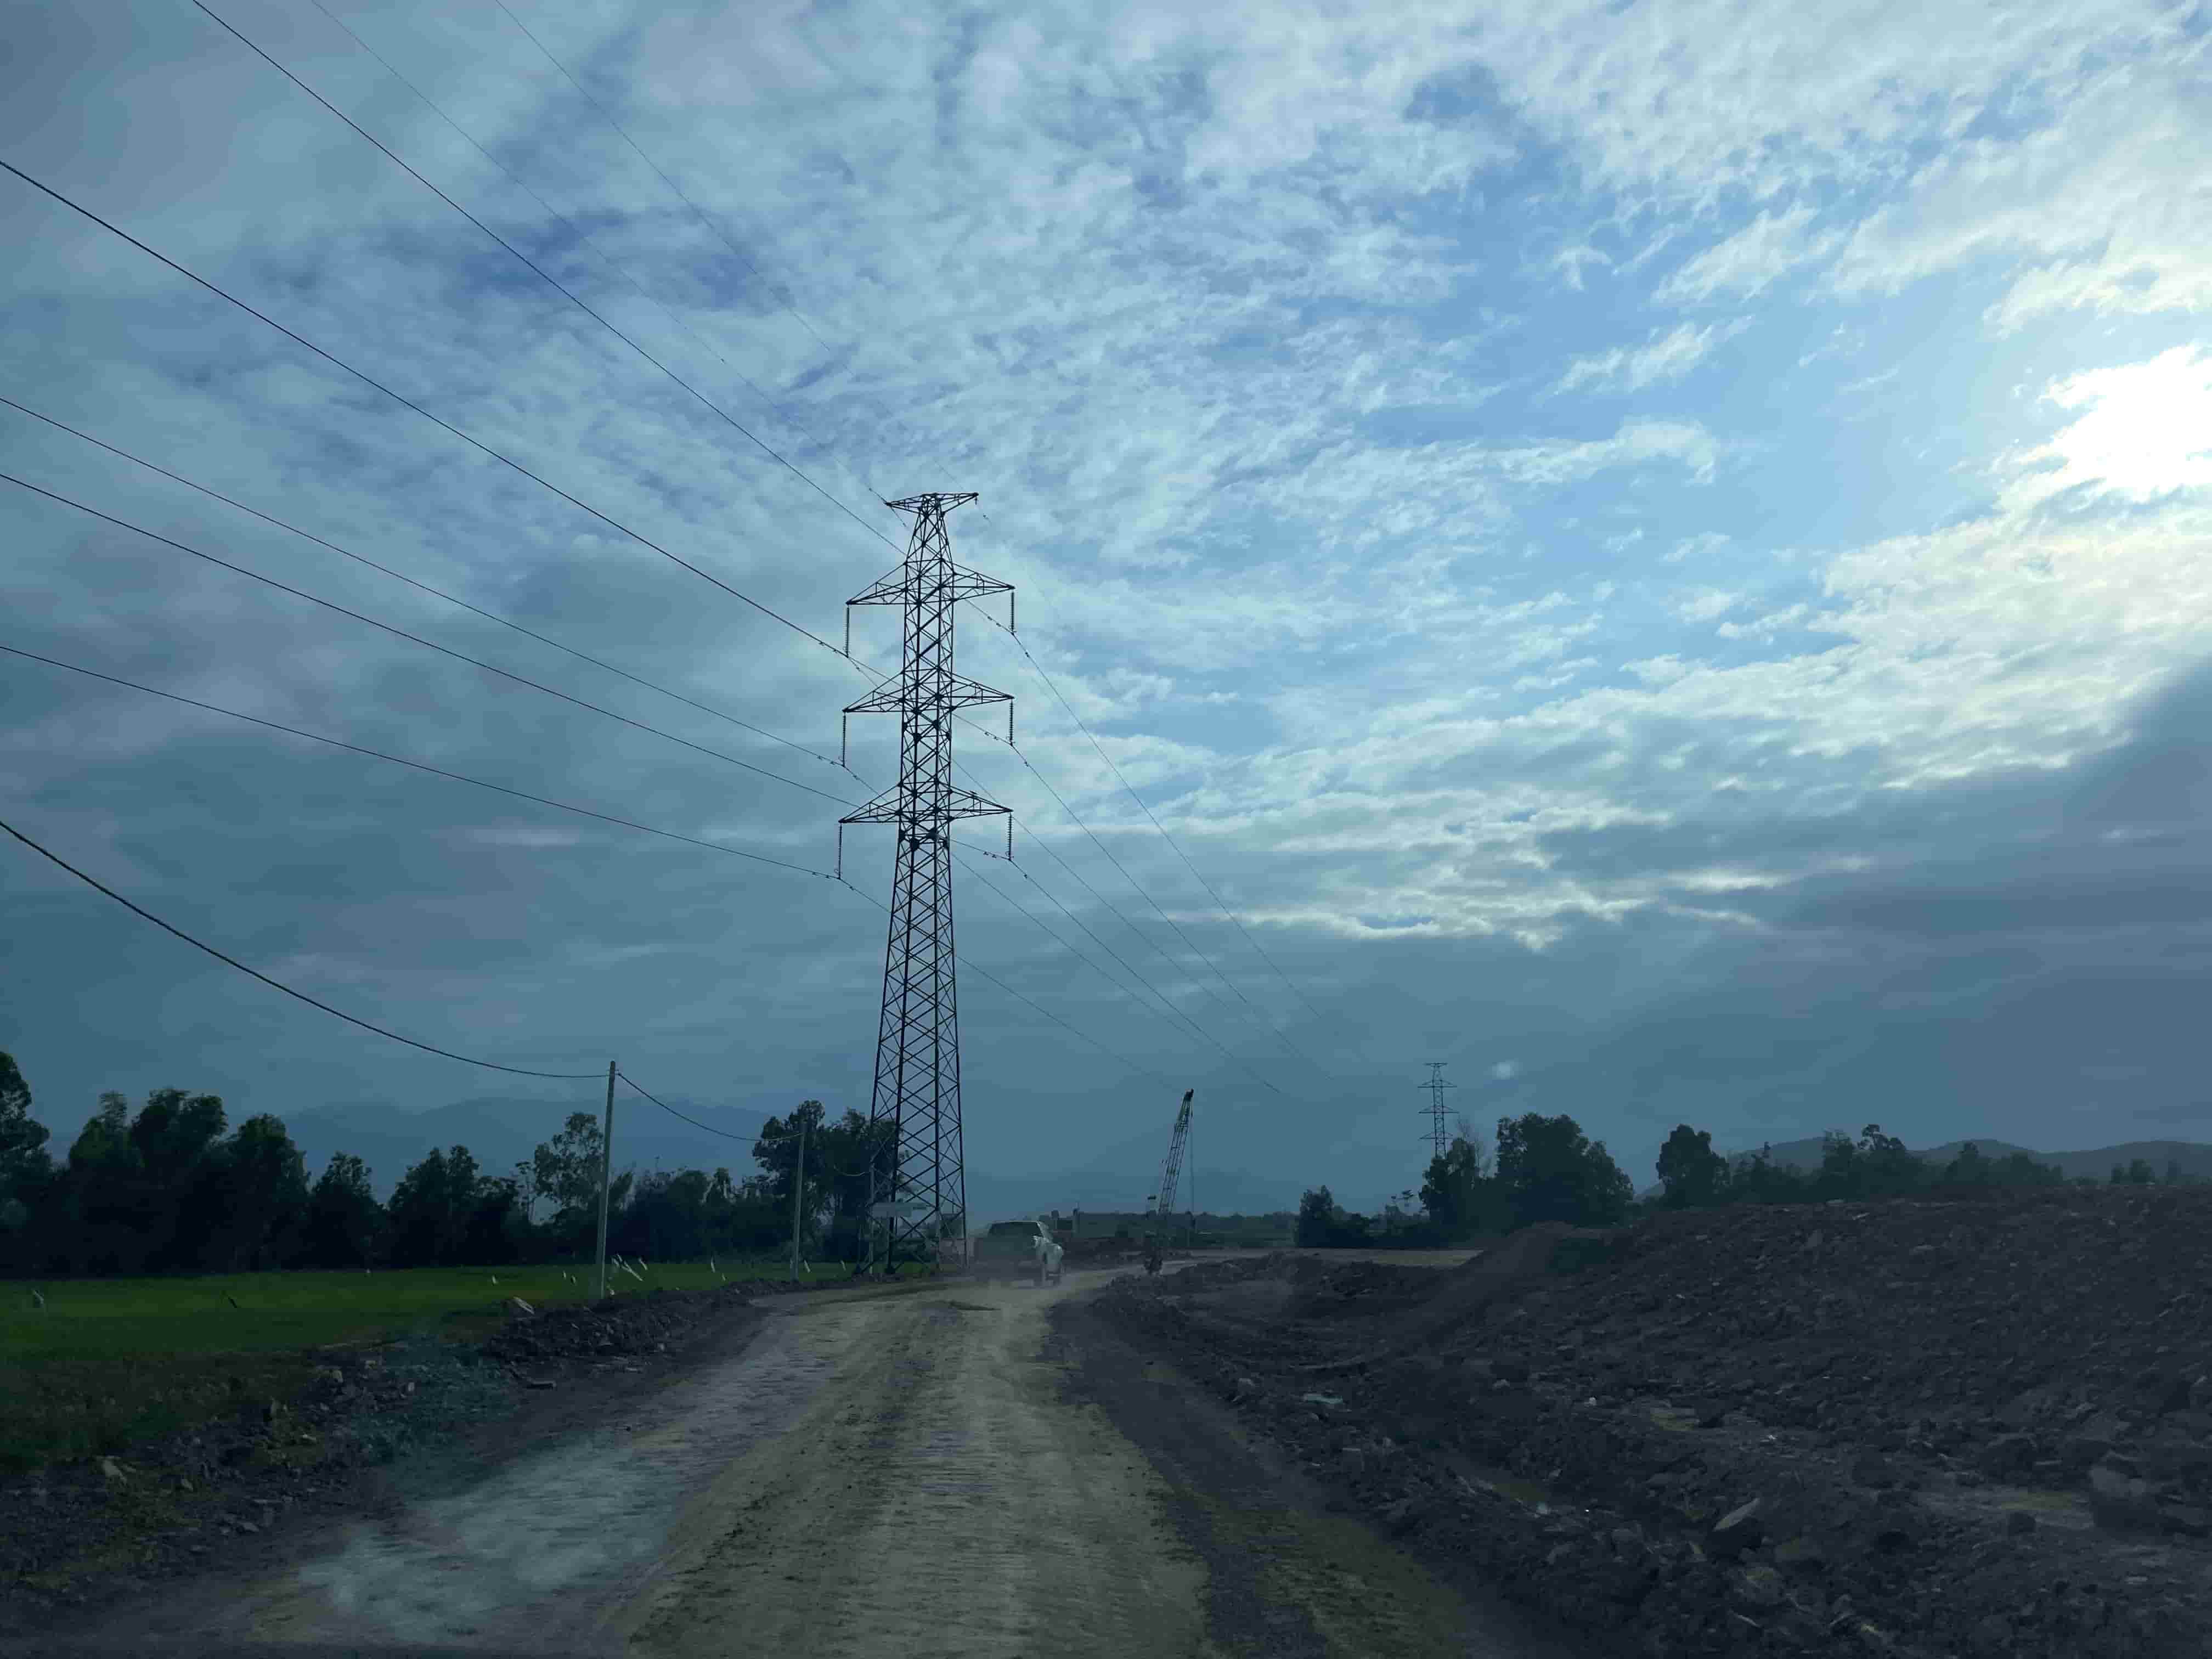  ở địa phương, đường dây 220kV đi nhiều đoạn trùng với đường cao tốc nên phải làm thủ tục xây dựng tuyến mới, cần bố trí đất để di dời. Đối với đường dây điện cao thế, huyện đã làm văn bản kiến nghị gửi Sở Công thương và UBND tỉnh để thực hiện quy trình xử lý.